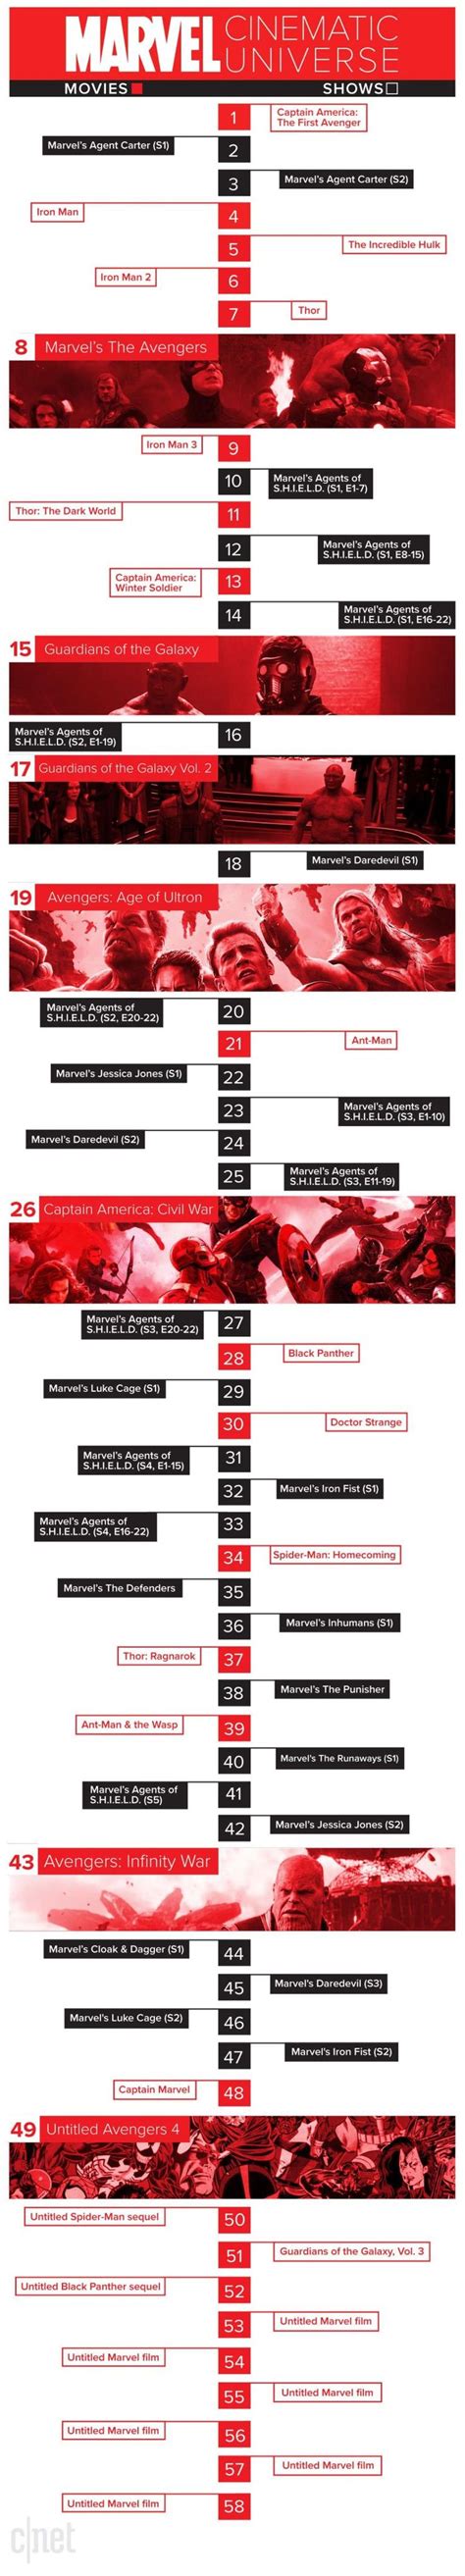 Liste De Tous Les Marvel Dans L'ordre - L’ordre des films et séries télé Marvel | Marvel timeline, Marvel